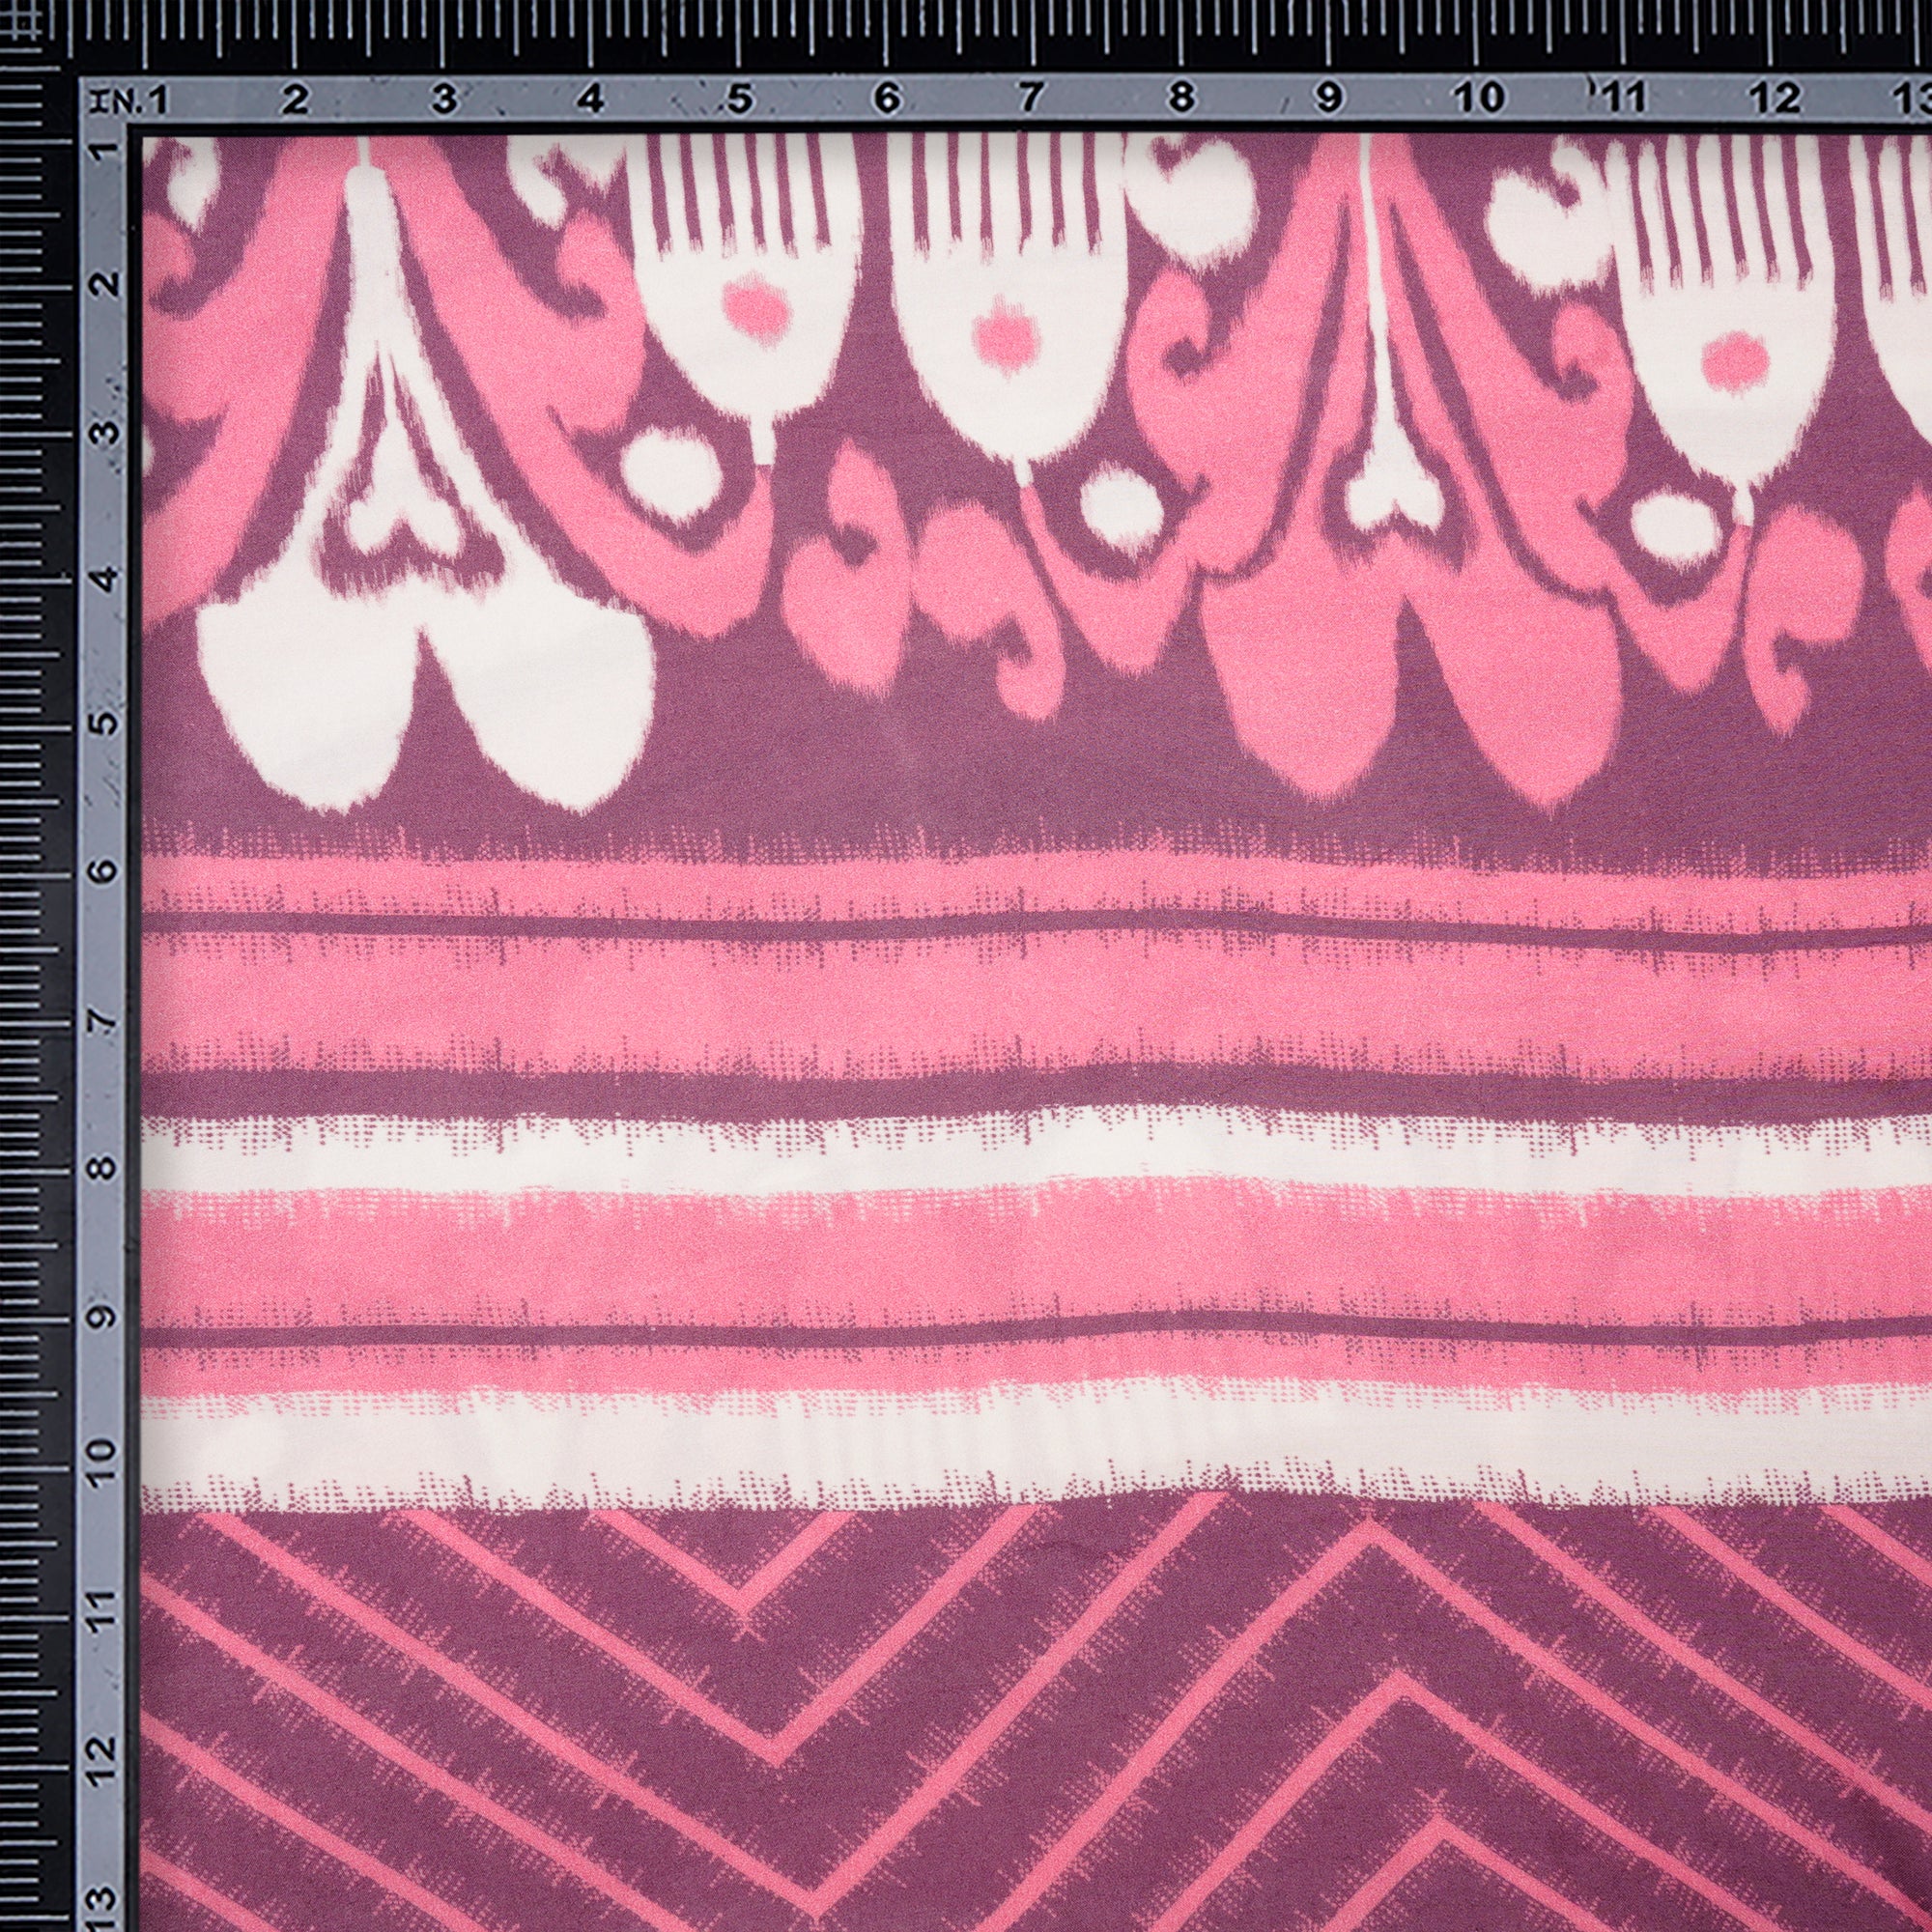 Off White-Purple Ikat Pattern Digital Pattern Bemberg Muslin Fabric